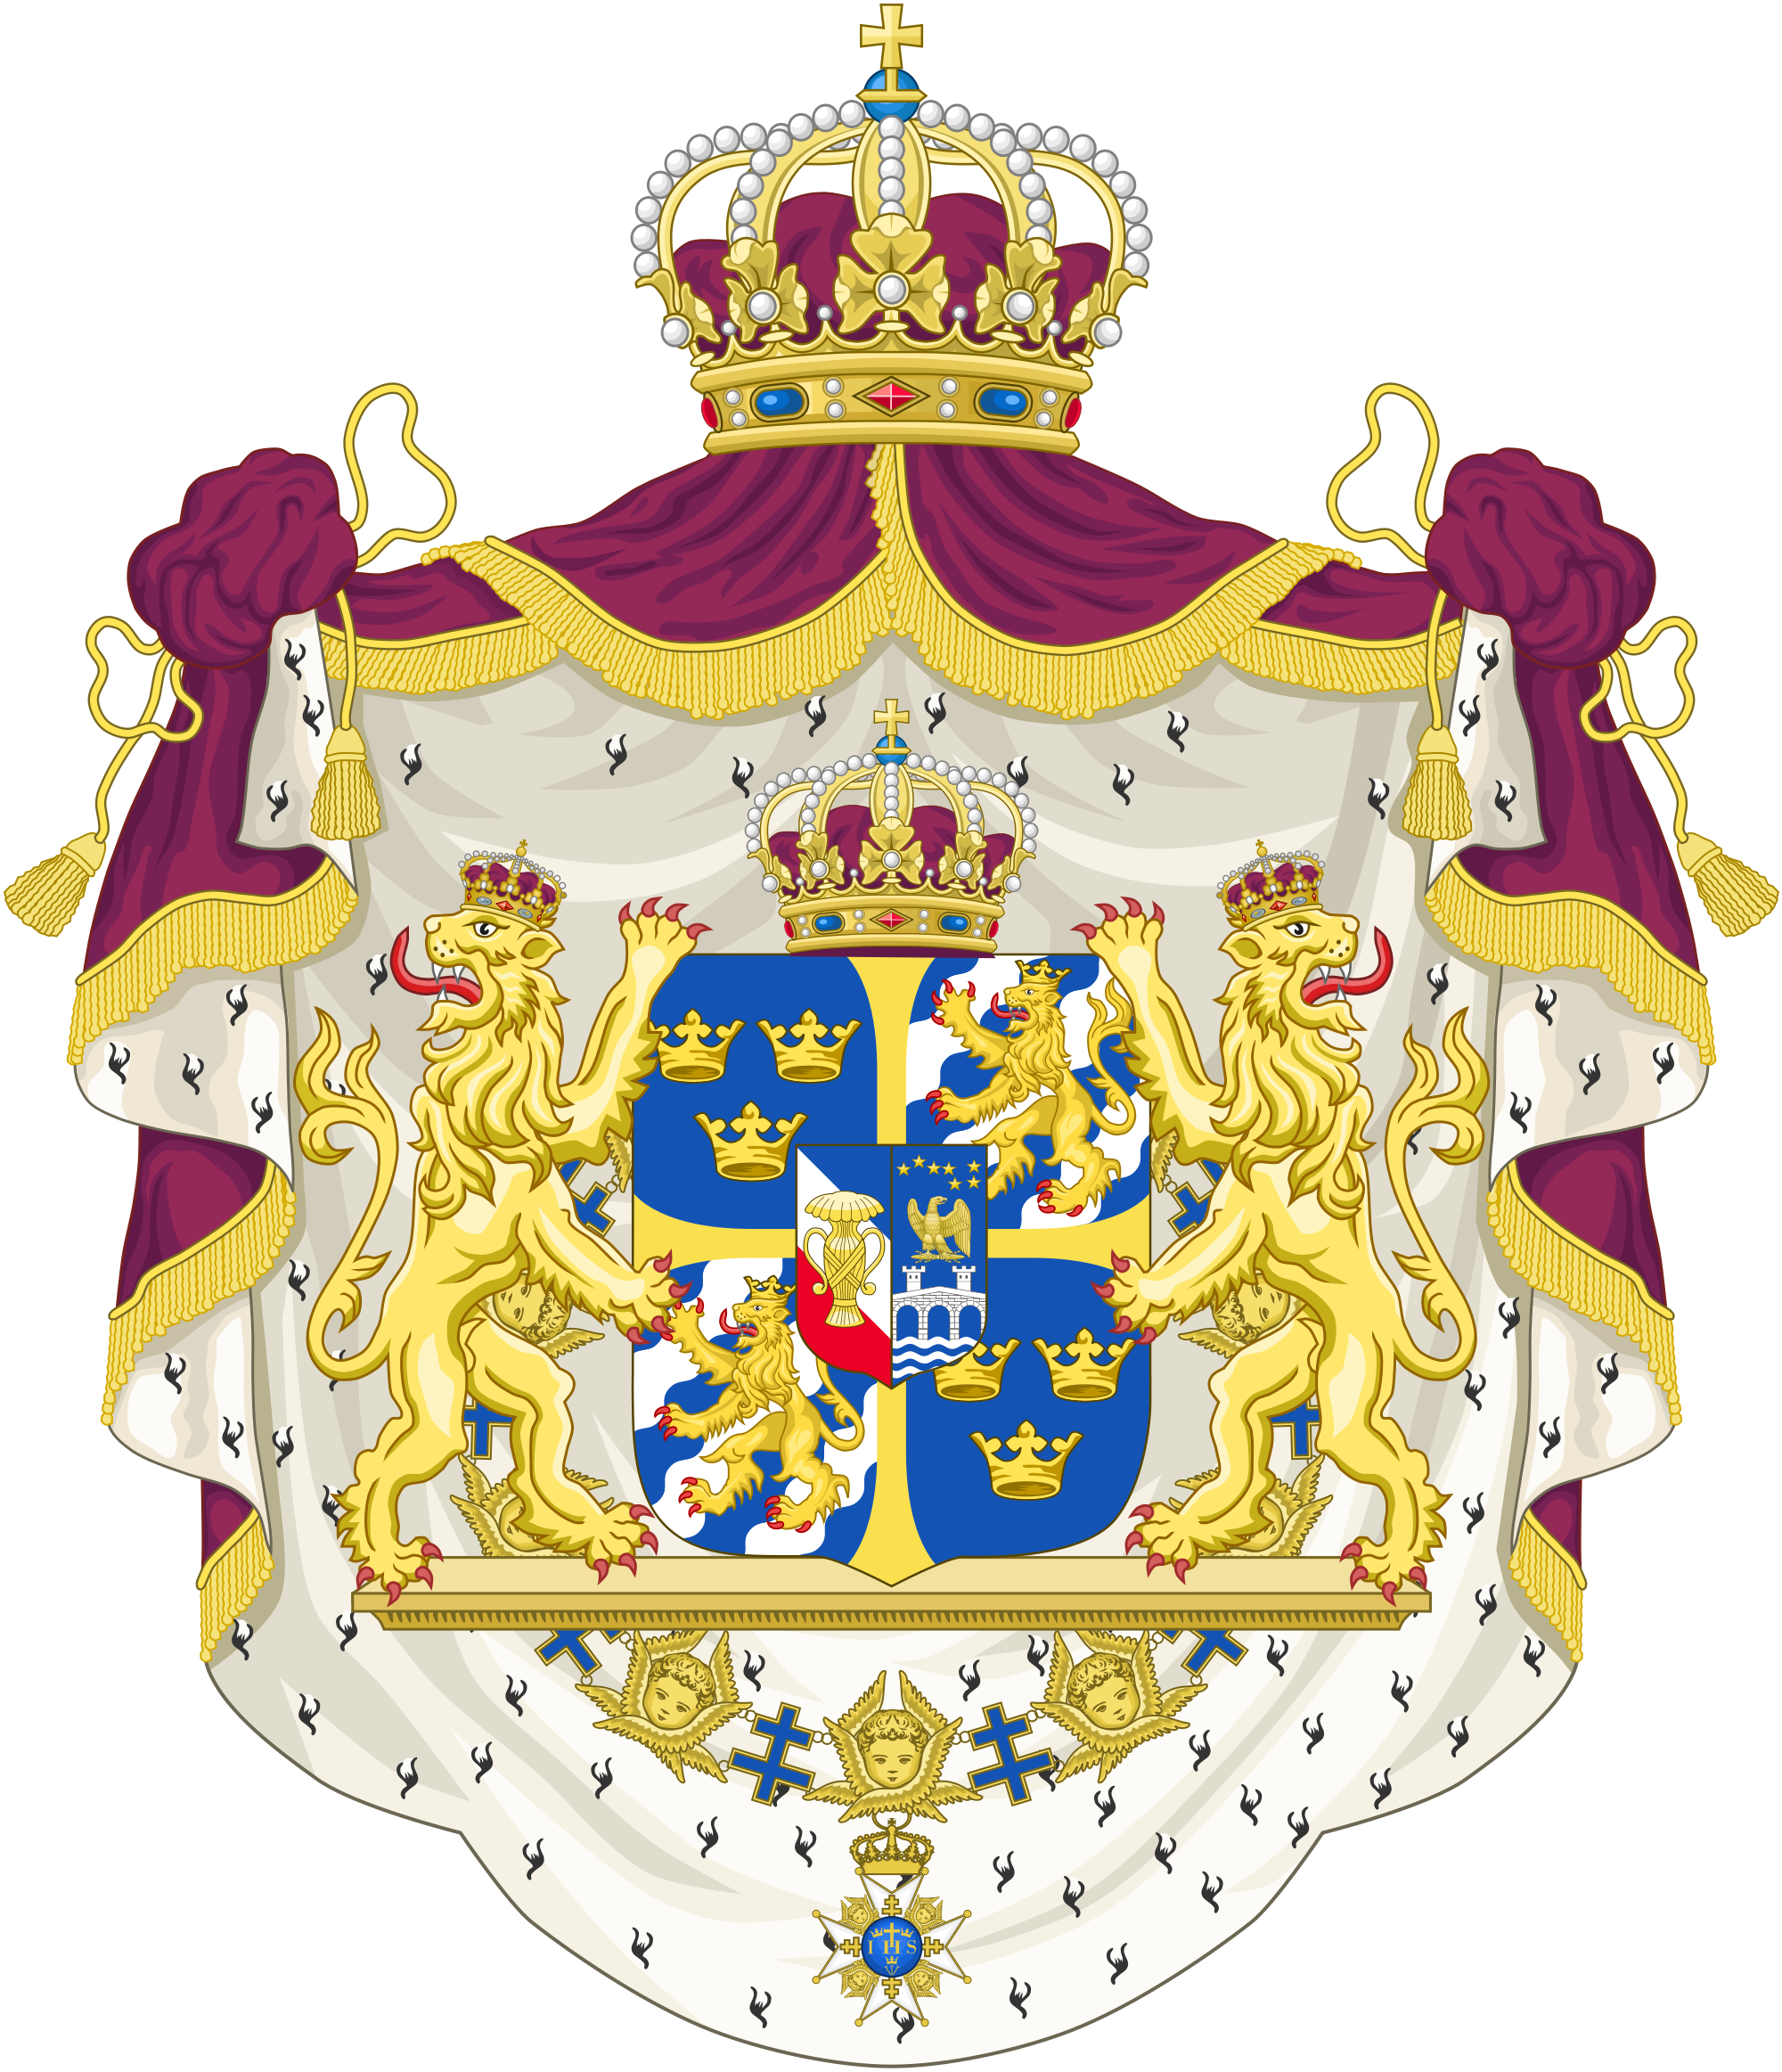 Emblem of Sweden